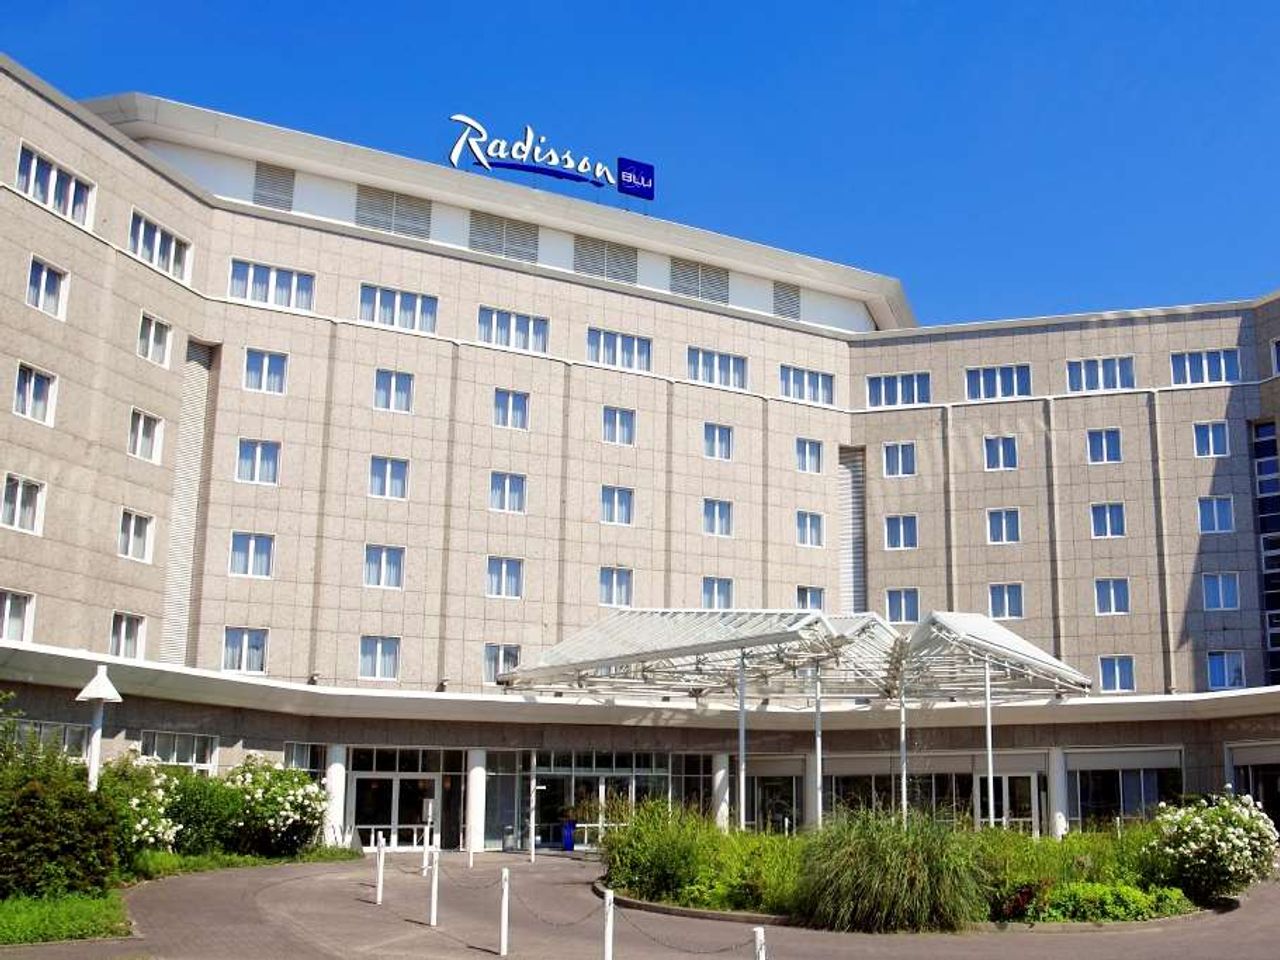 5 Tage im Radisson Blu Hotel, Dortmund 